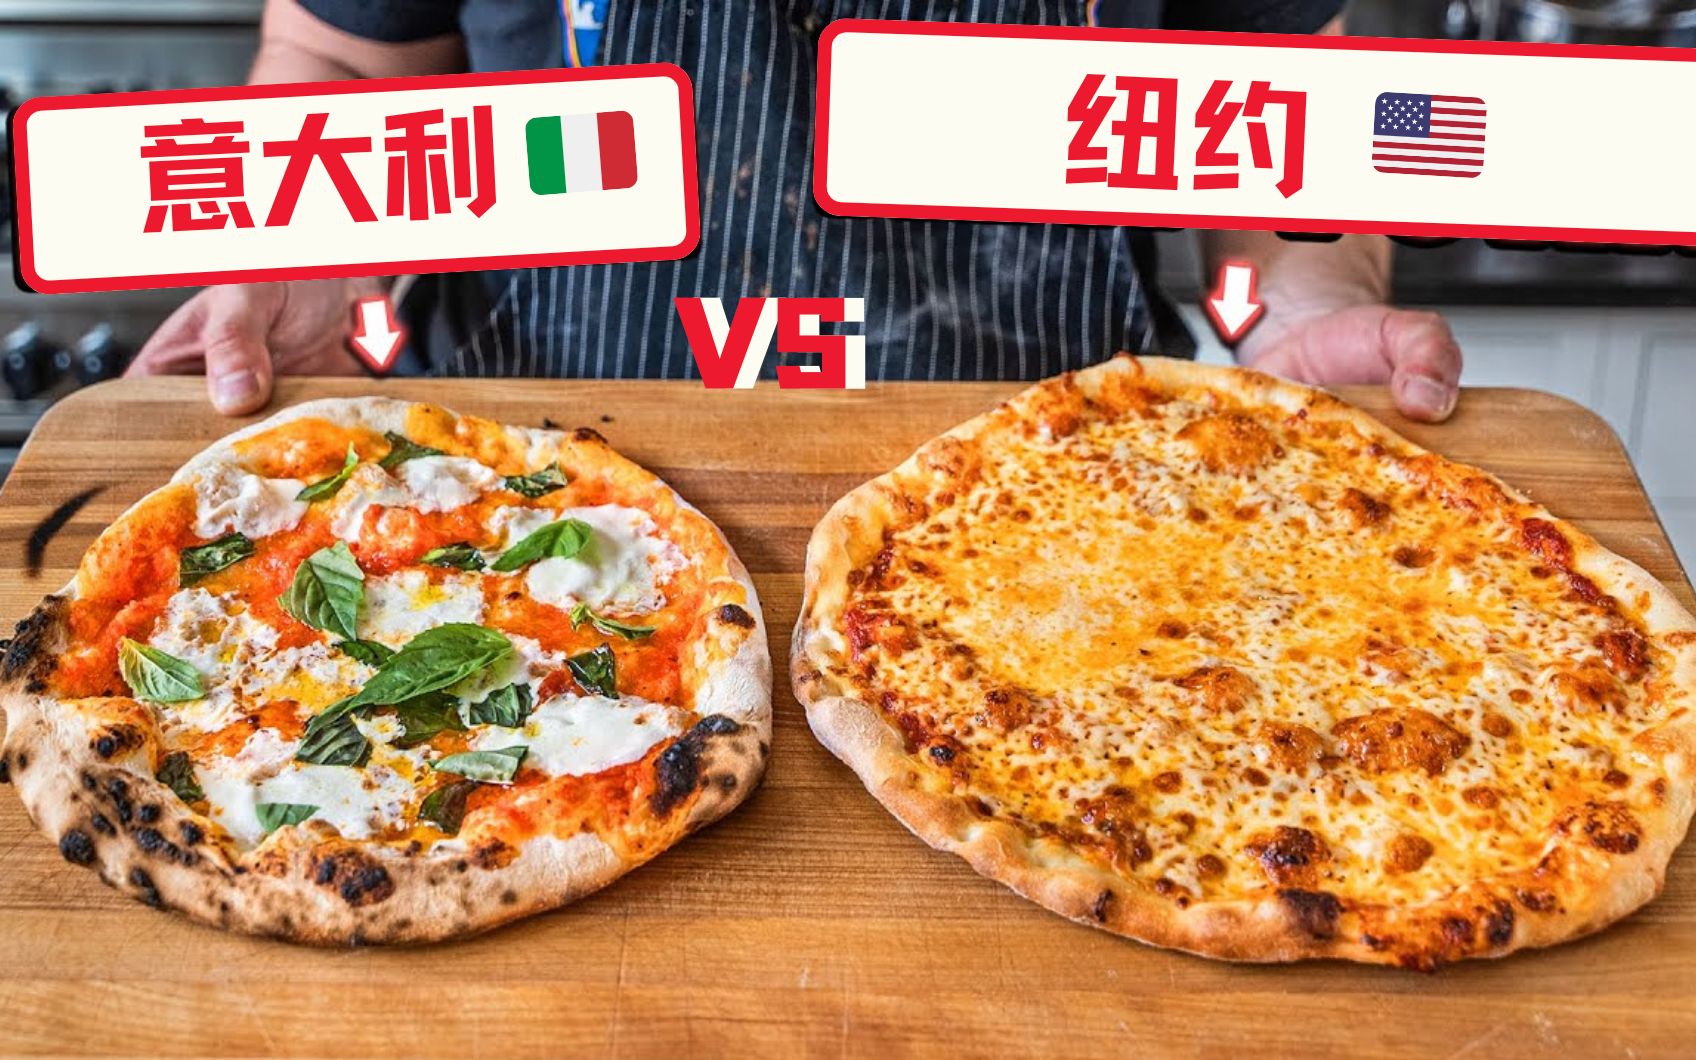 意式pizza VS 美式pizza，口味和制作手法竟差别那么大？到底哪个更胜一筹呢？